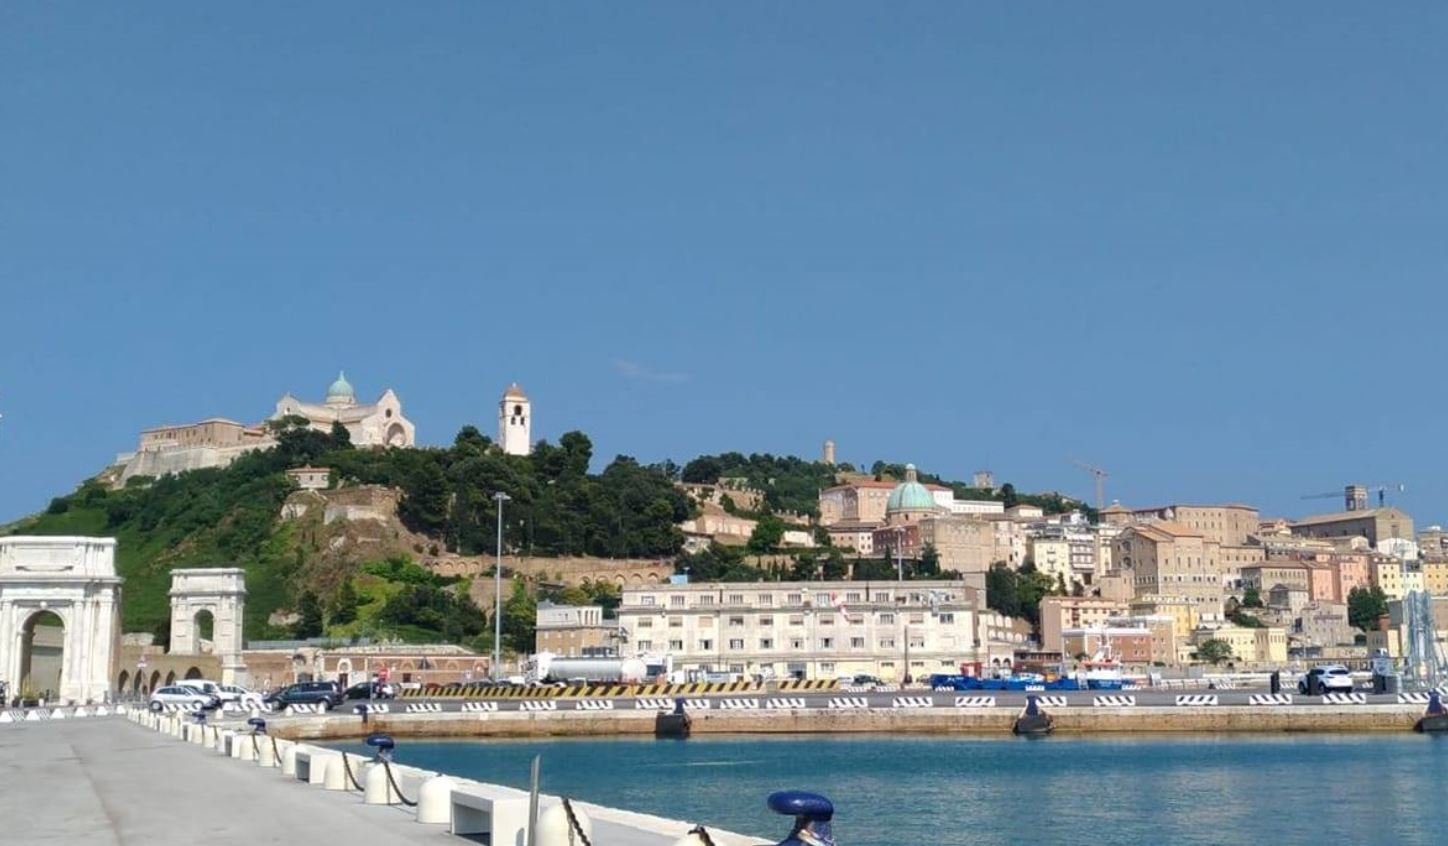 Ancona – Autorità portuale in stallo: “Il Ministro riapra i bandi per avere un presidente”